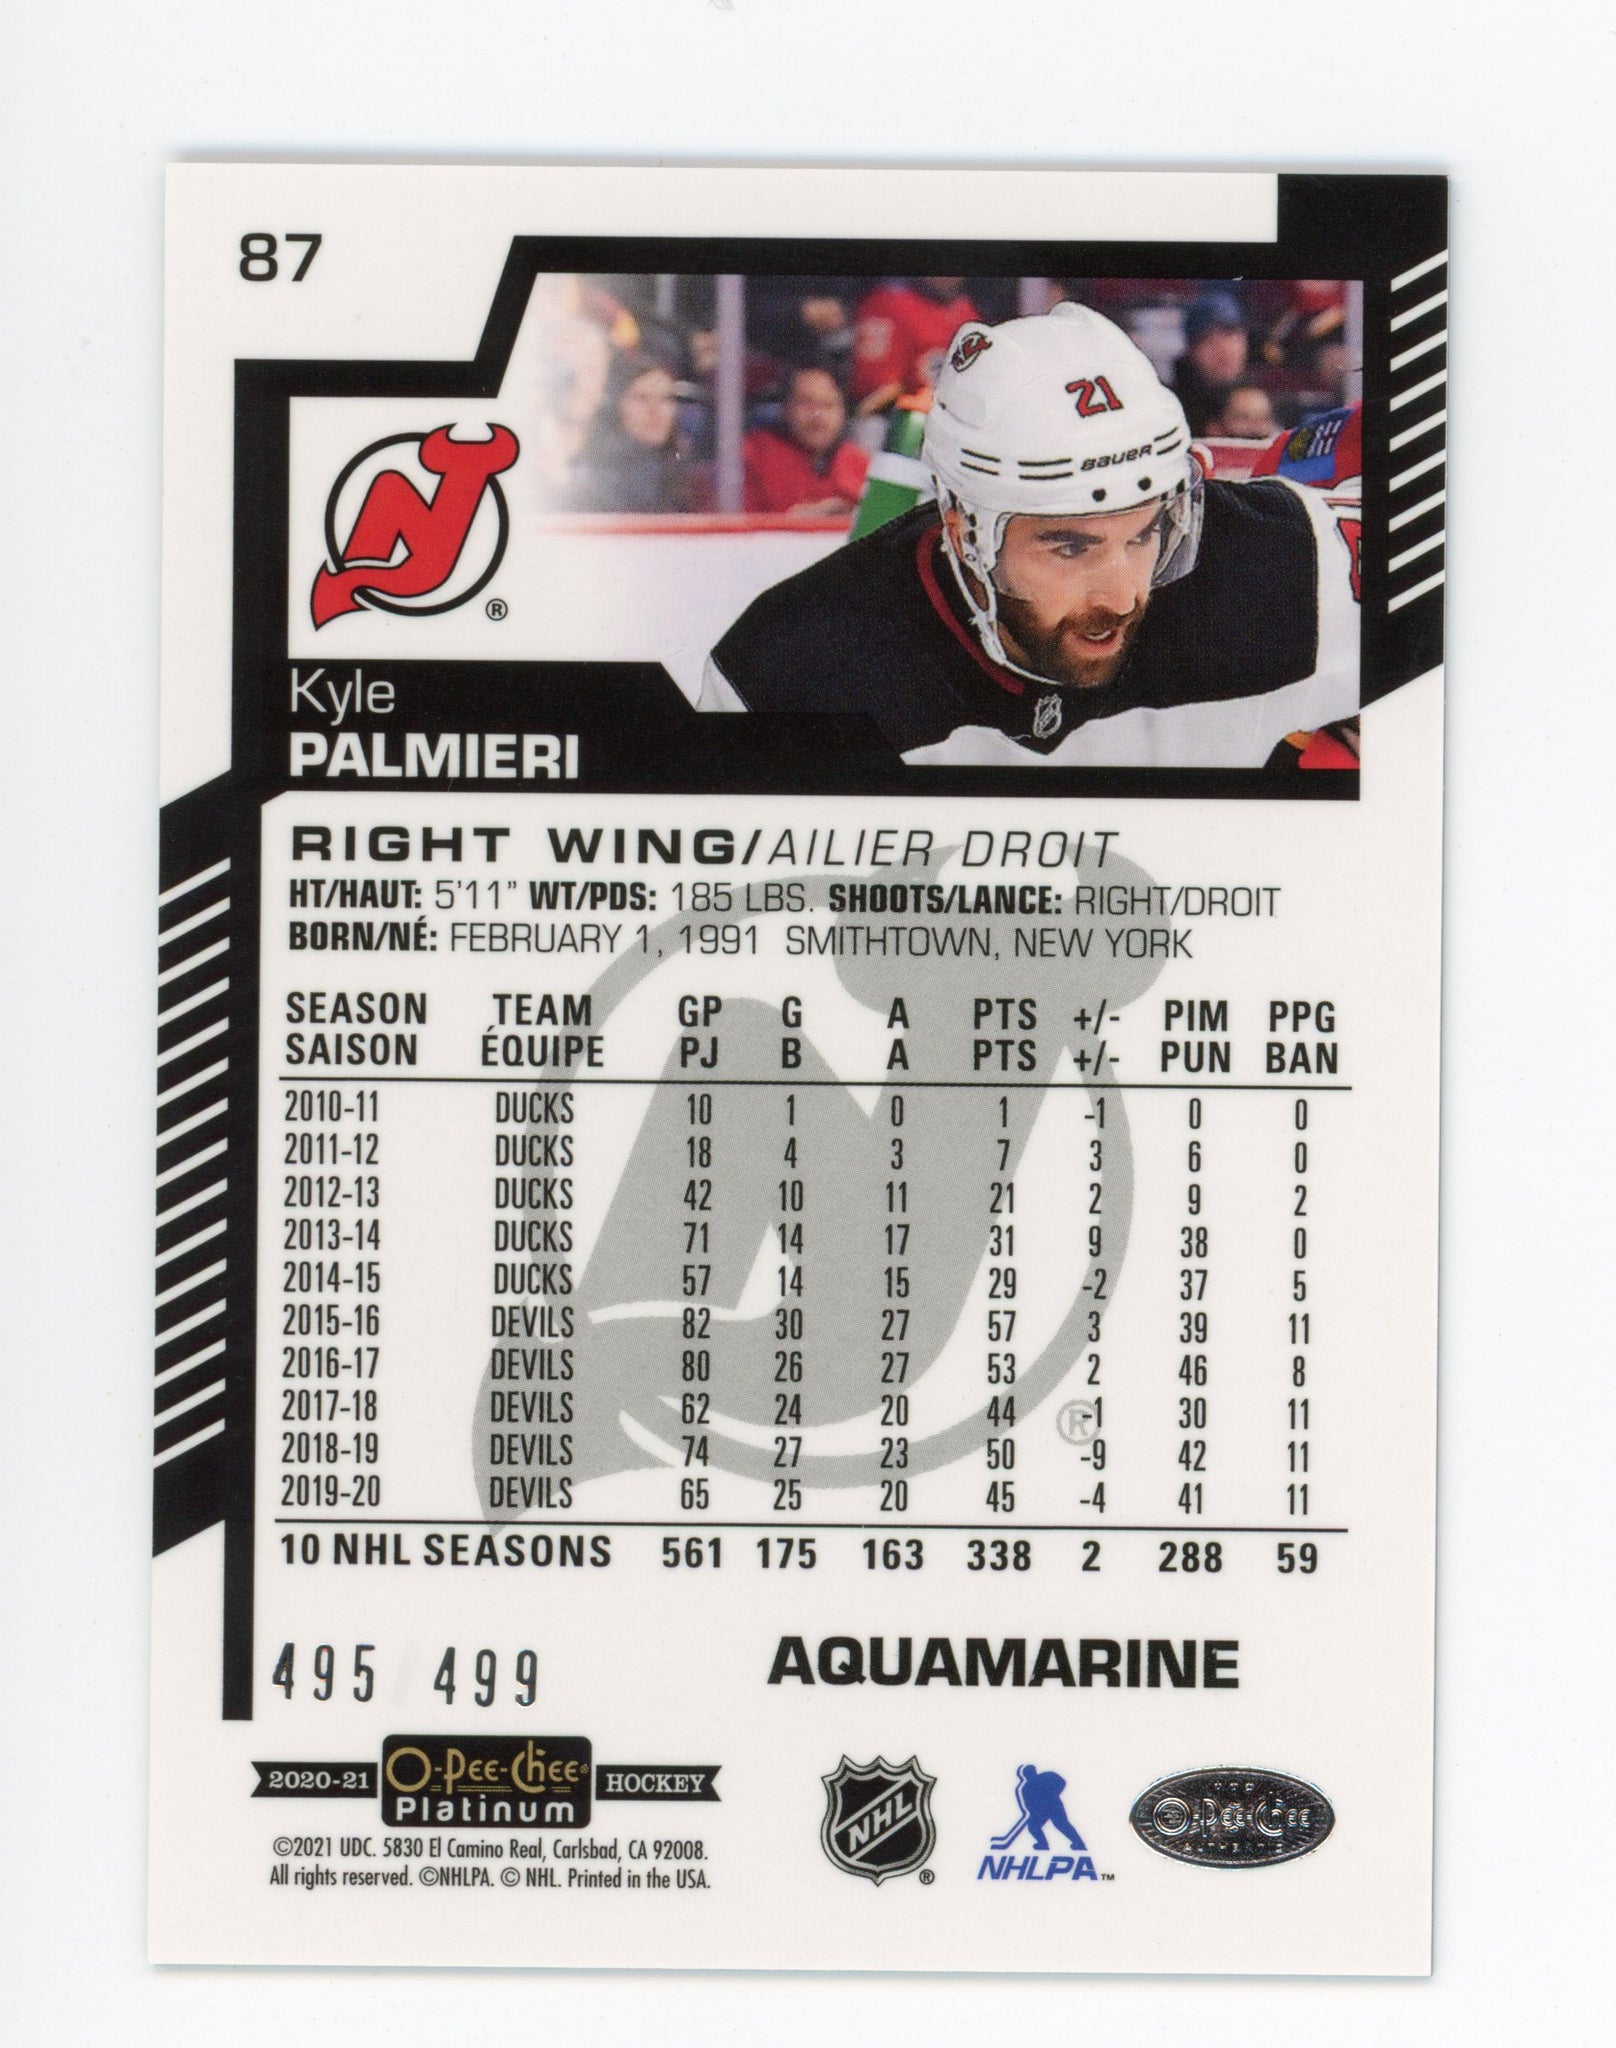 2020-2021 Kyle Palmieri Aquamarine #d /499 OPC New Jersey Devils # 87